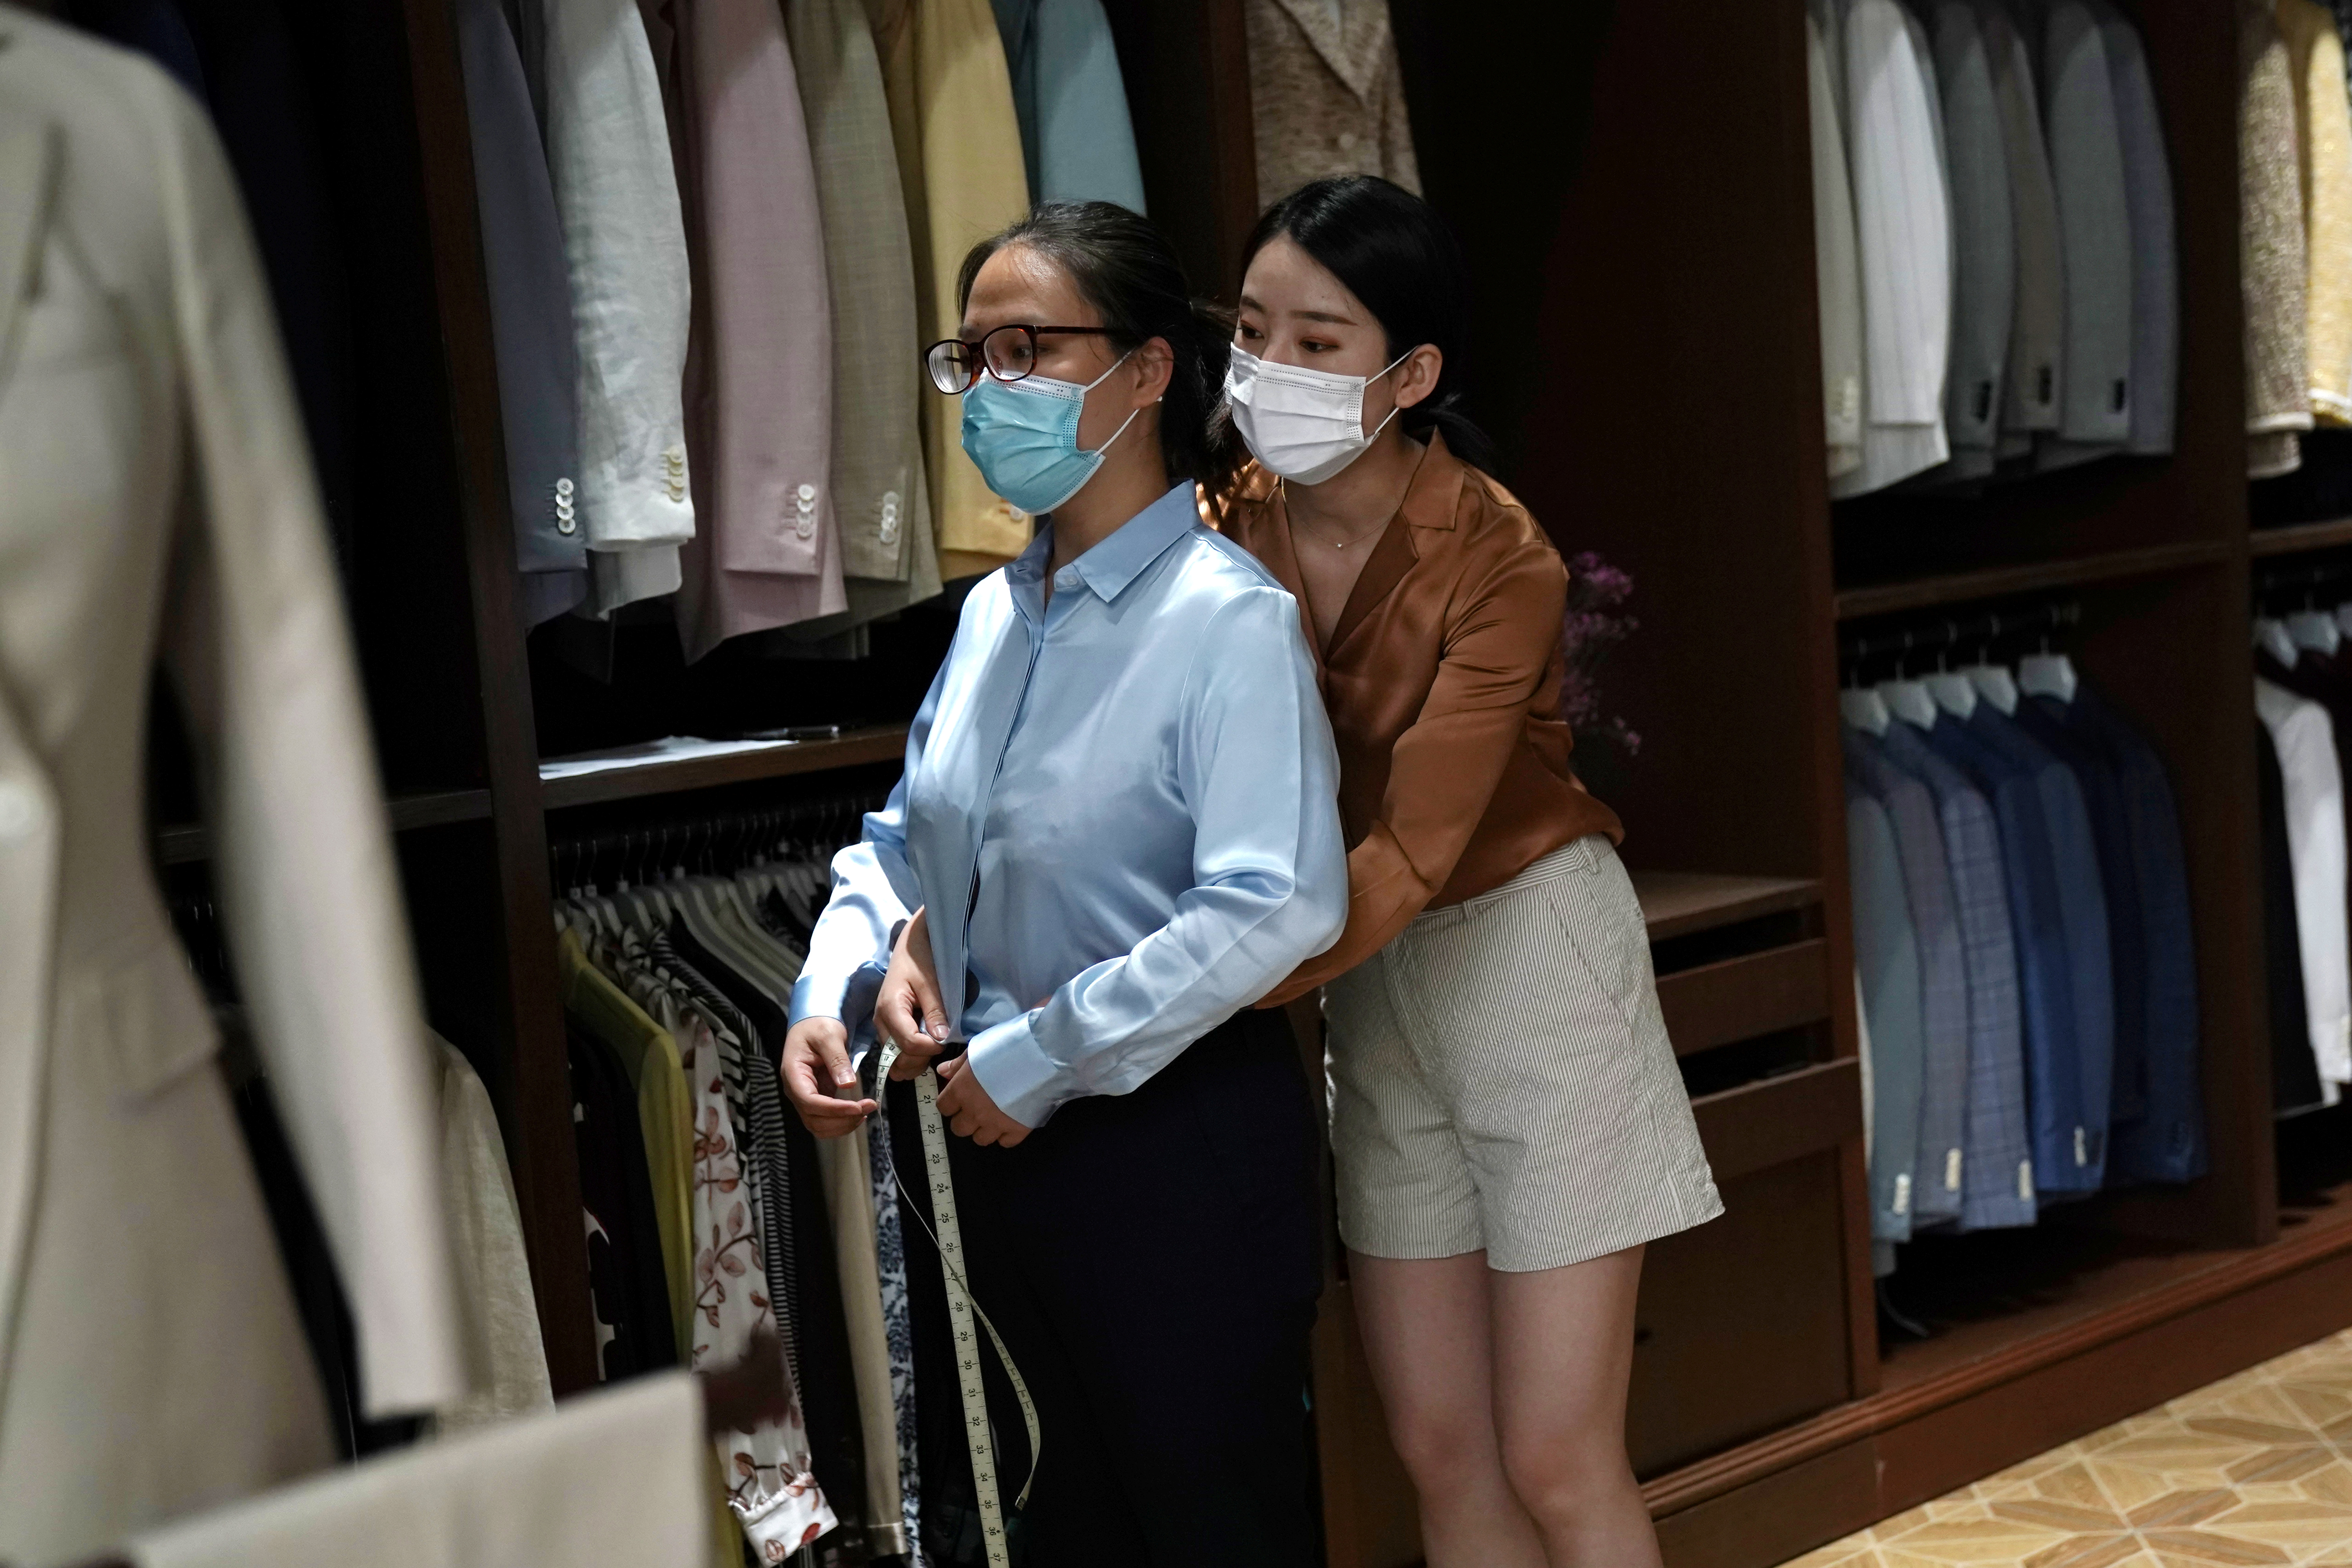 Ekspedientka obsługująca klientkę w zakładzie krawieckim w biznesowej części Pekinu, gdzie ubrania są szyte na specjalne zamówienie.